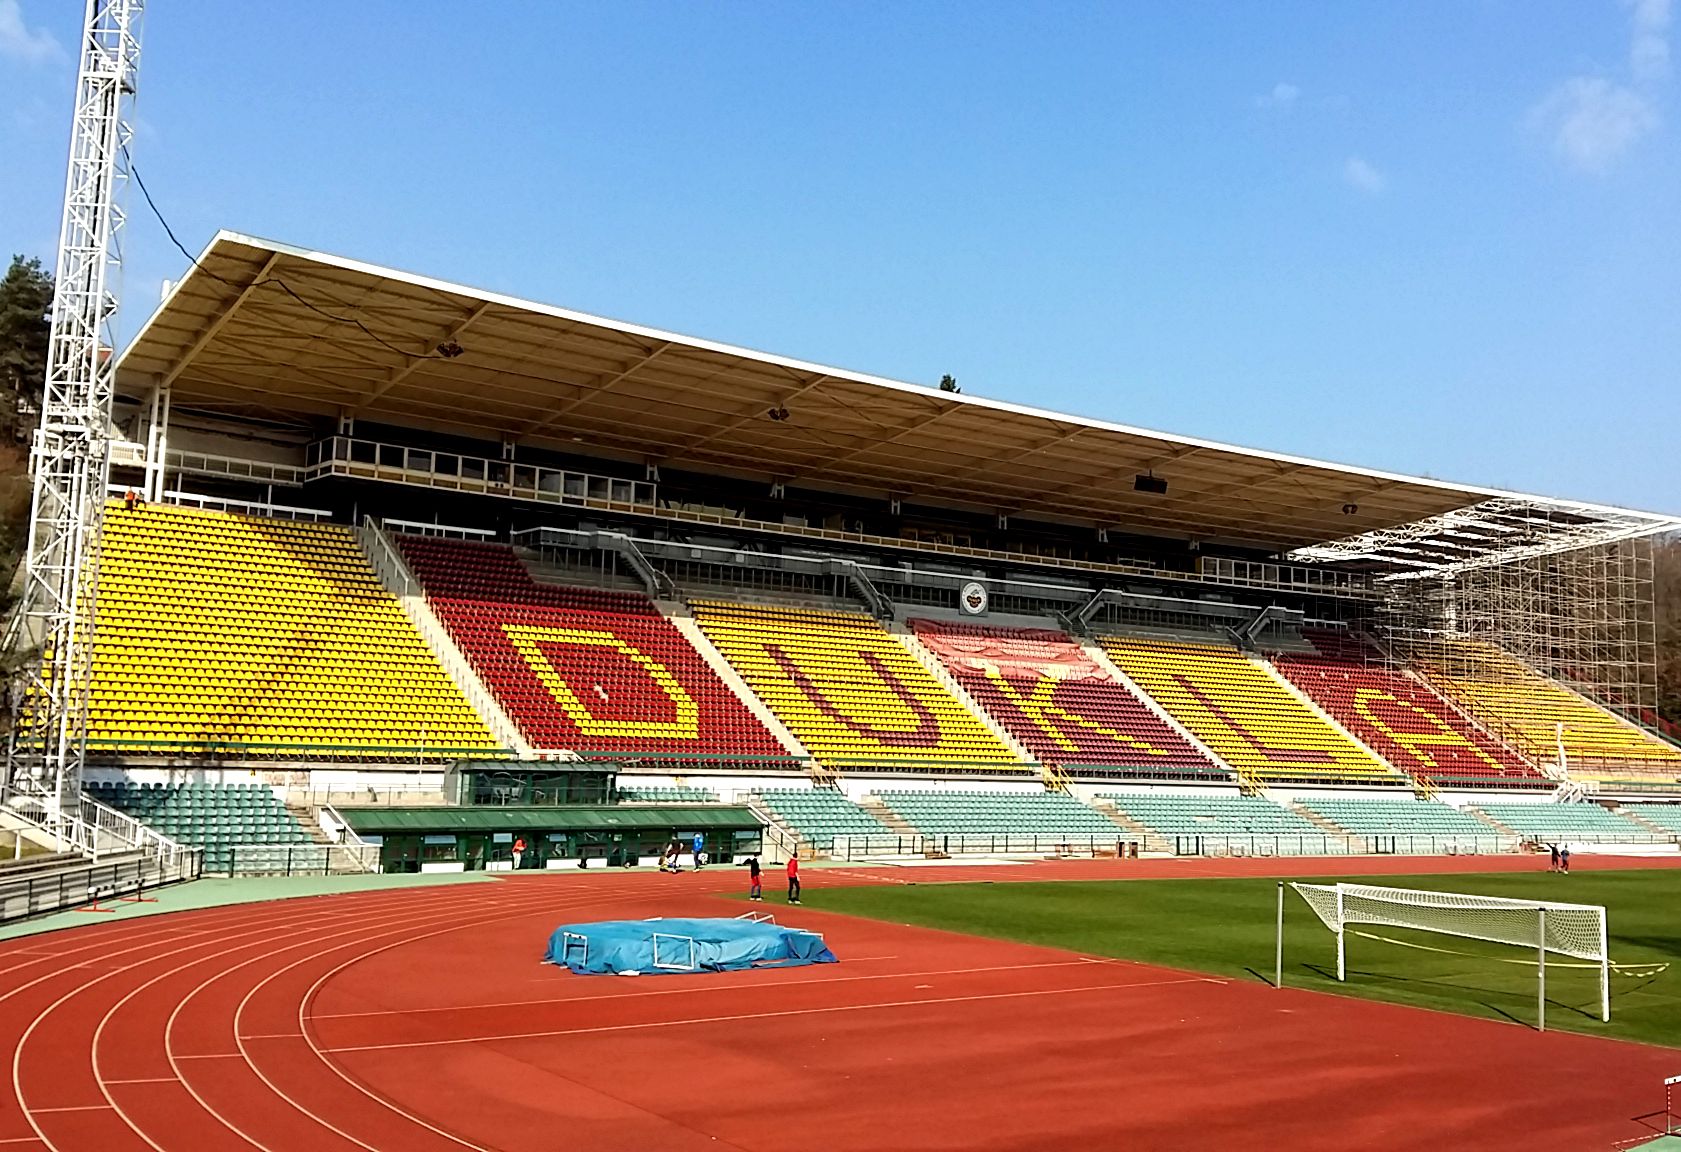 Stadion Juliska rekonstrukce tribuny - Visokogradnja